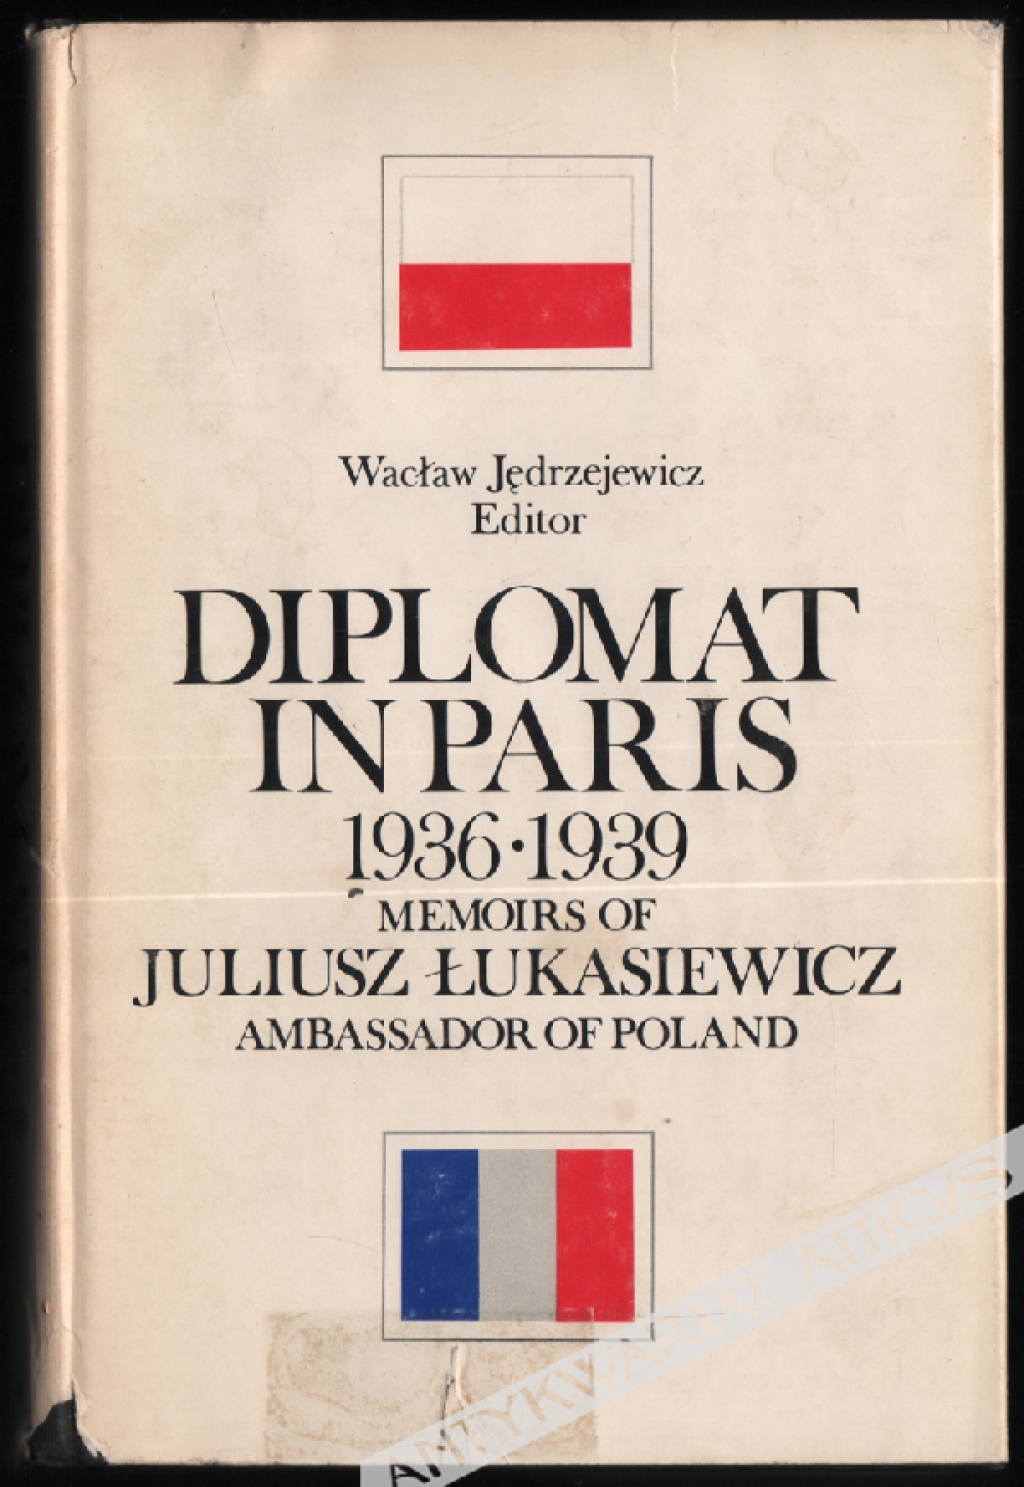 Diplomat in Paris 1936 - 1939. Memoirs of Juliusz Łukasiewicz Ambassador of Poland